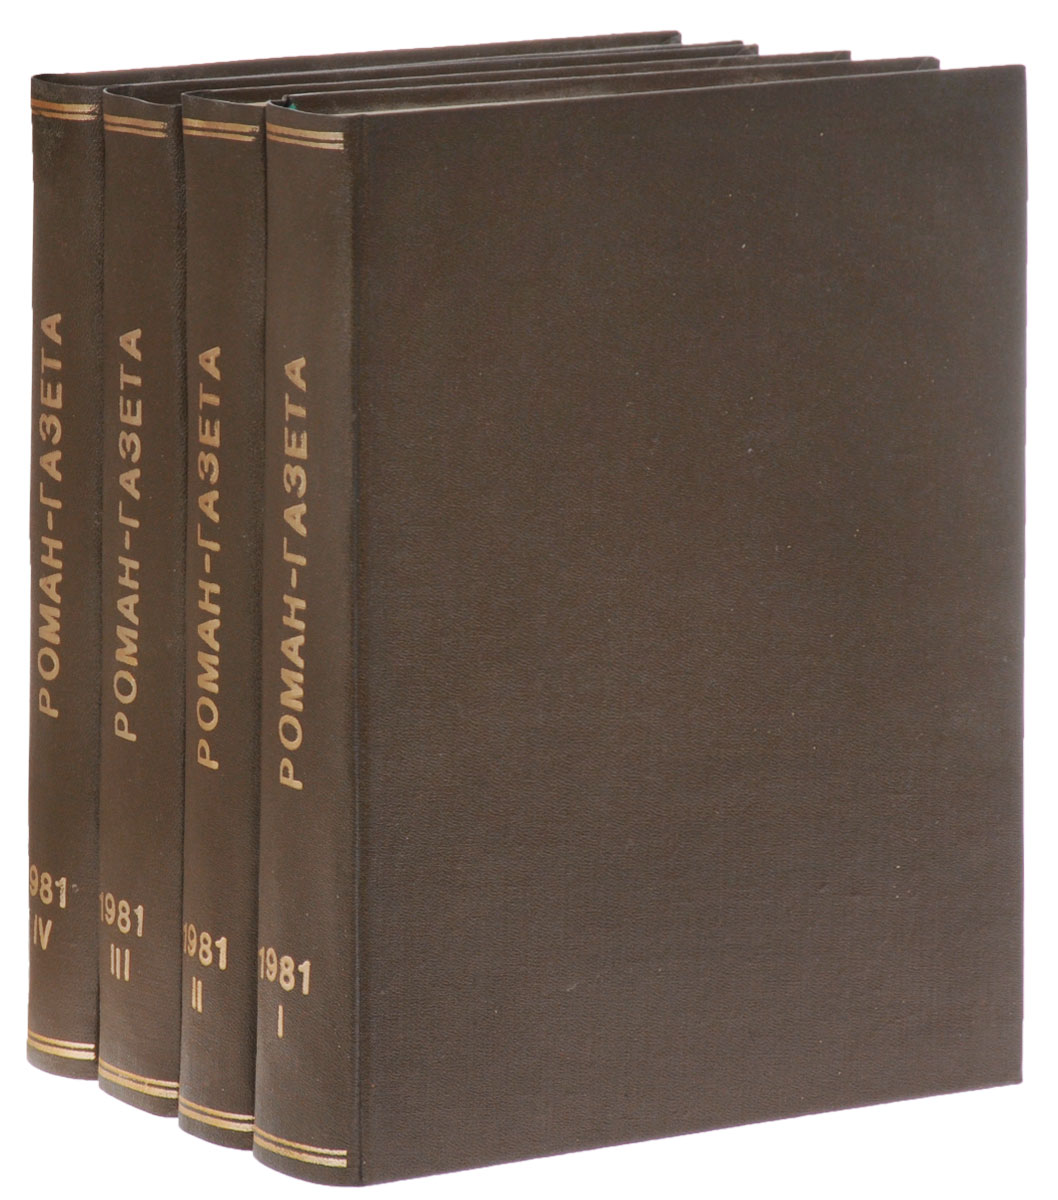 Годовая подшивка журнала "Роман-газета" за 1981 год (комплект из 4 книг)